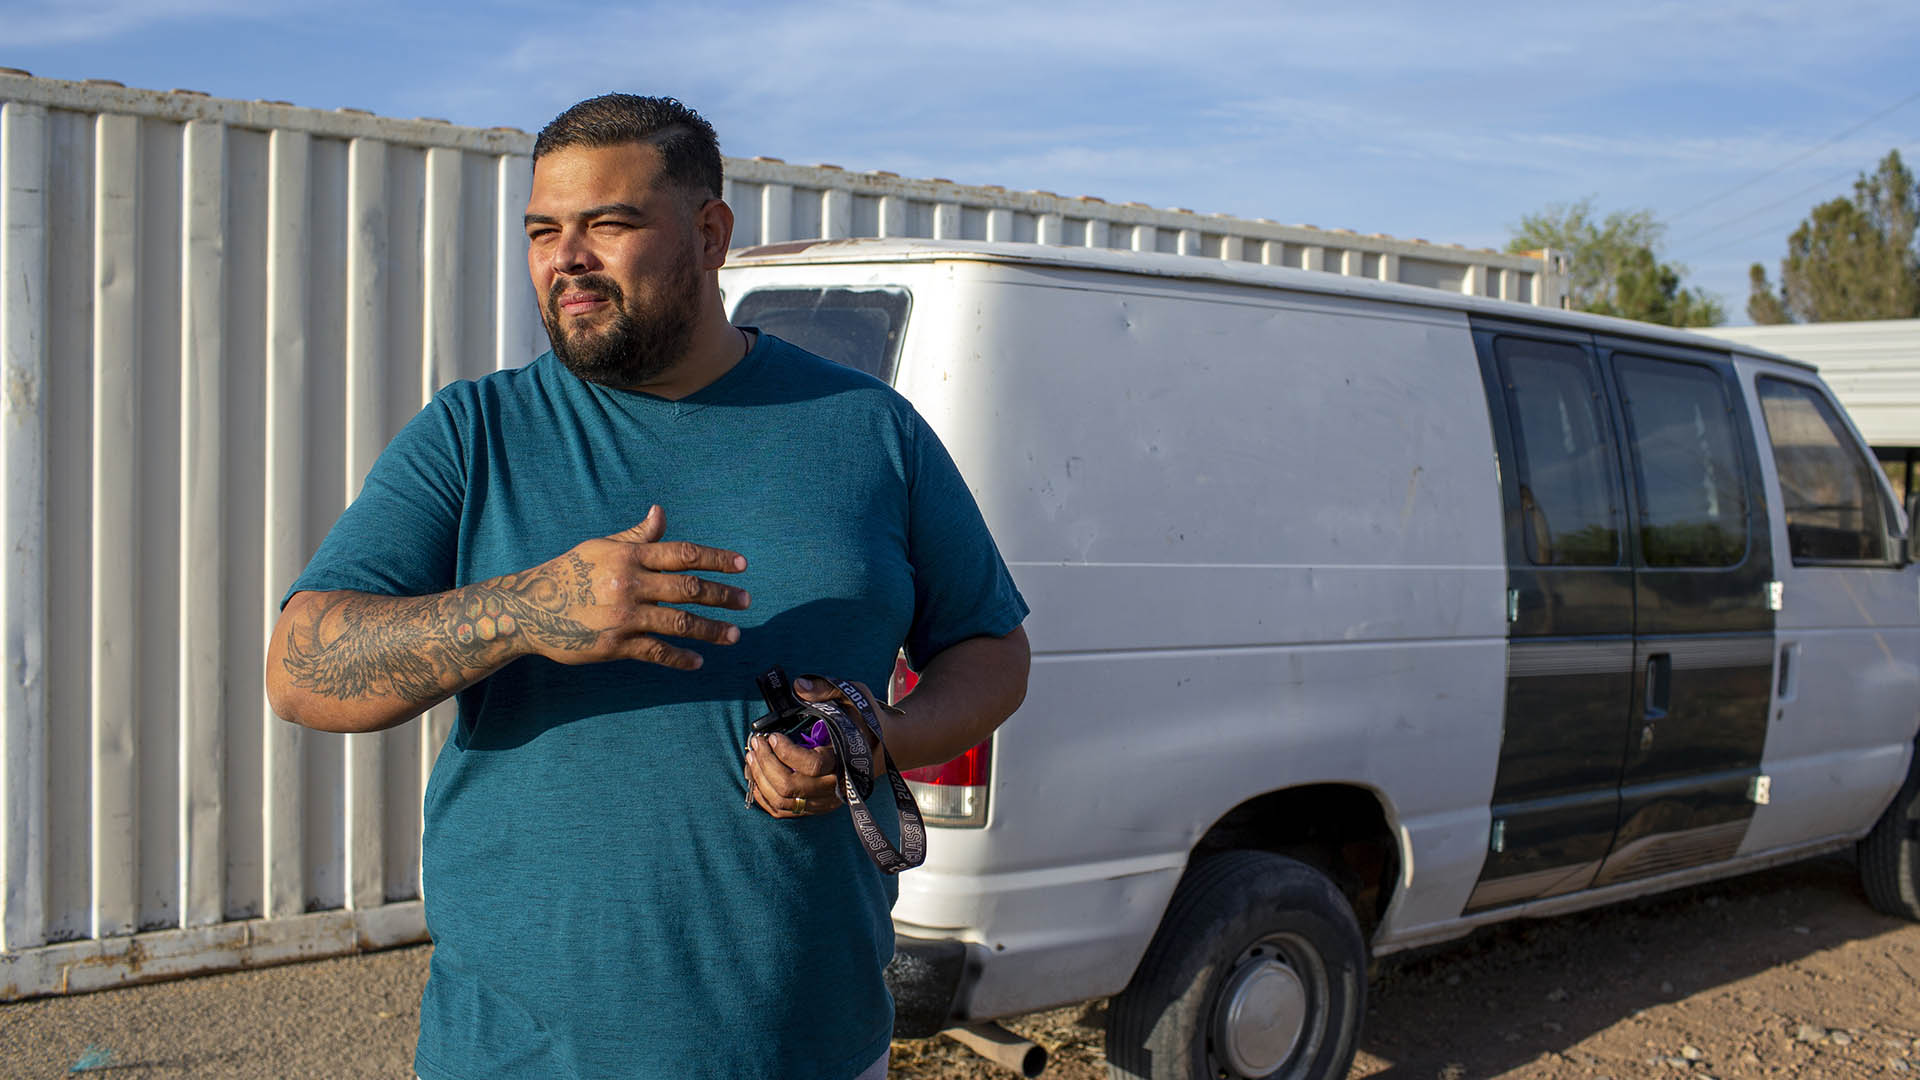 El solicitante de asilo venezolano Luis López muestra la camioneta que está restaurando para estar listo para cuando obtenga su permiso de trabajo para comenzar un negocio de pintura y remodelación de casas en El Paso, Texas, el viernes 12 de mayo de 2023. (AP Photo/Andres Leighton)

